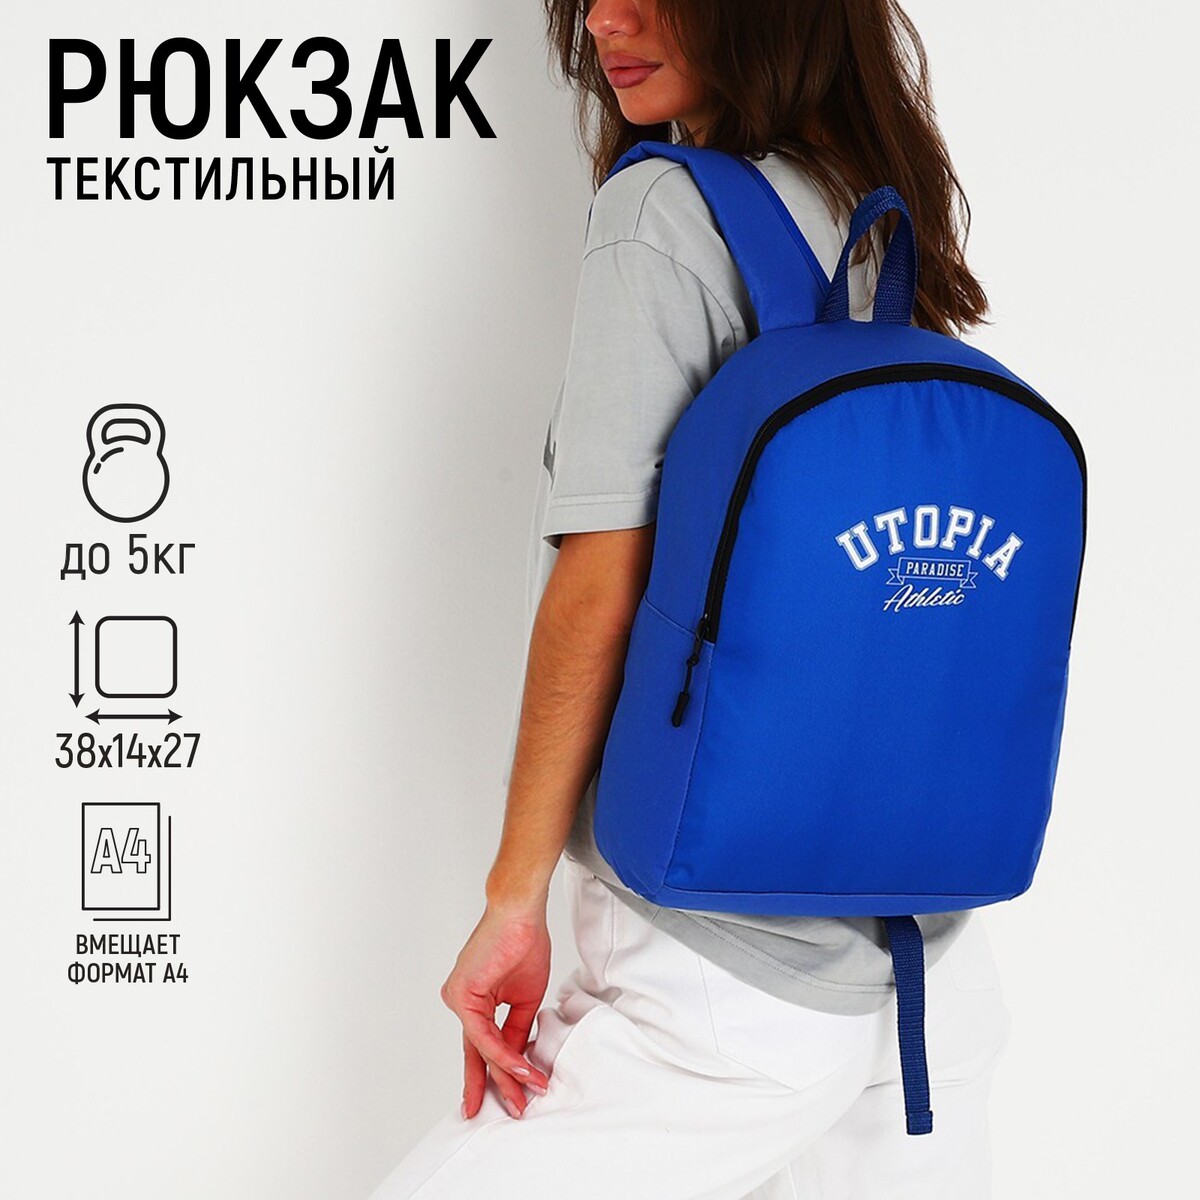 Рюкзак текстильный utopia, 38х14х27 см, цвет синий рюкзак текстильный котик в костюме 38х14х27 см